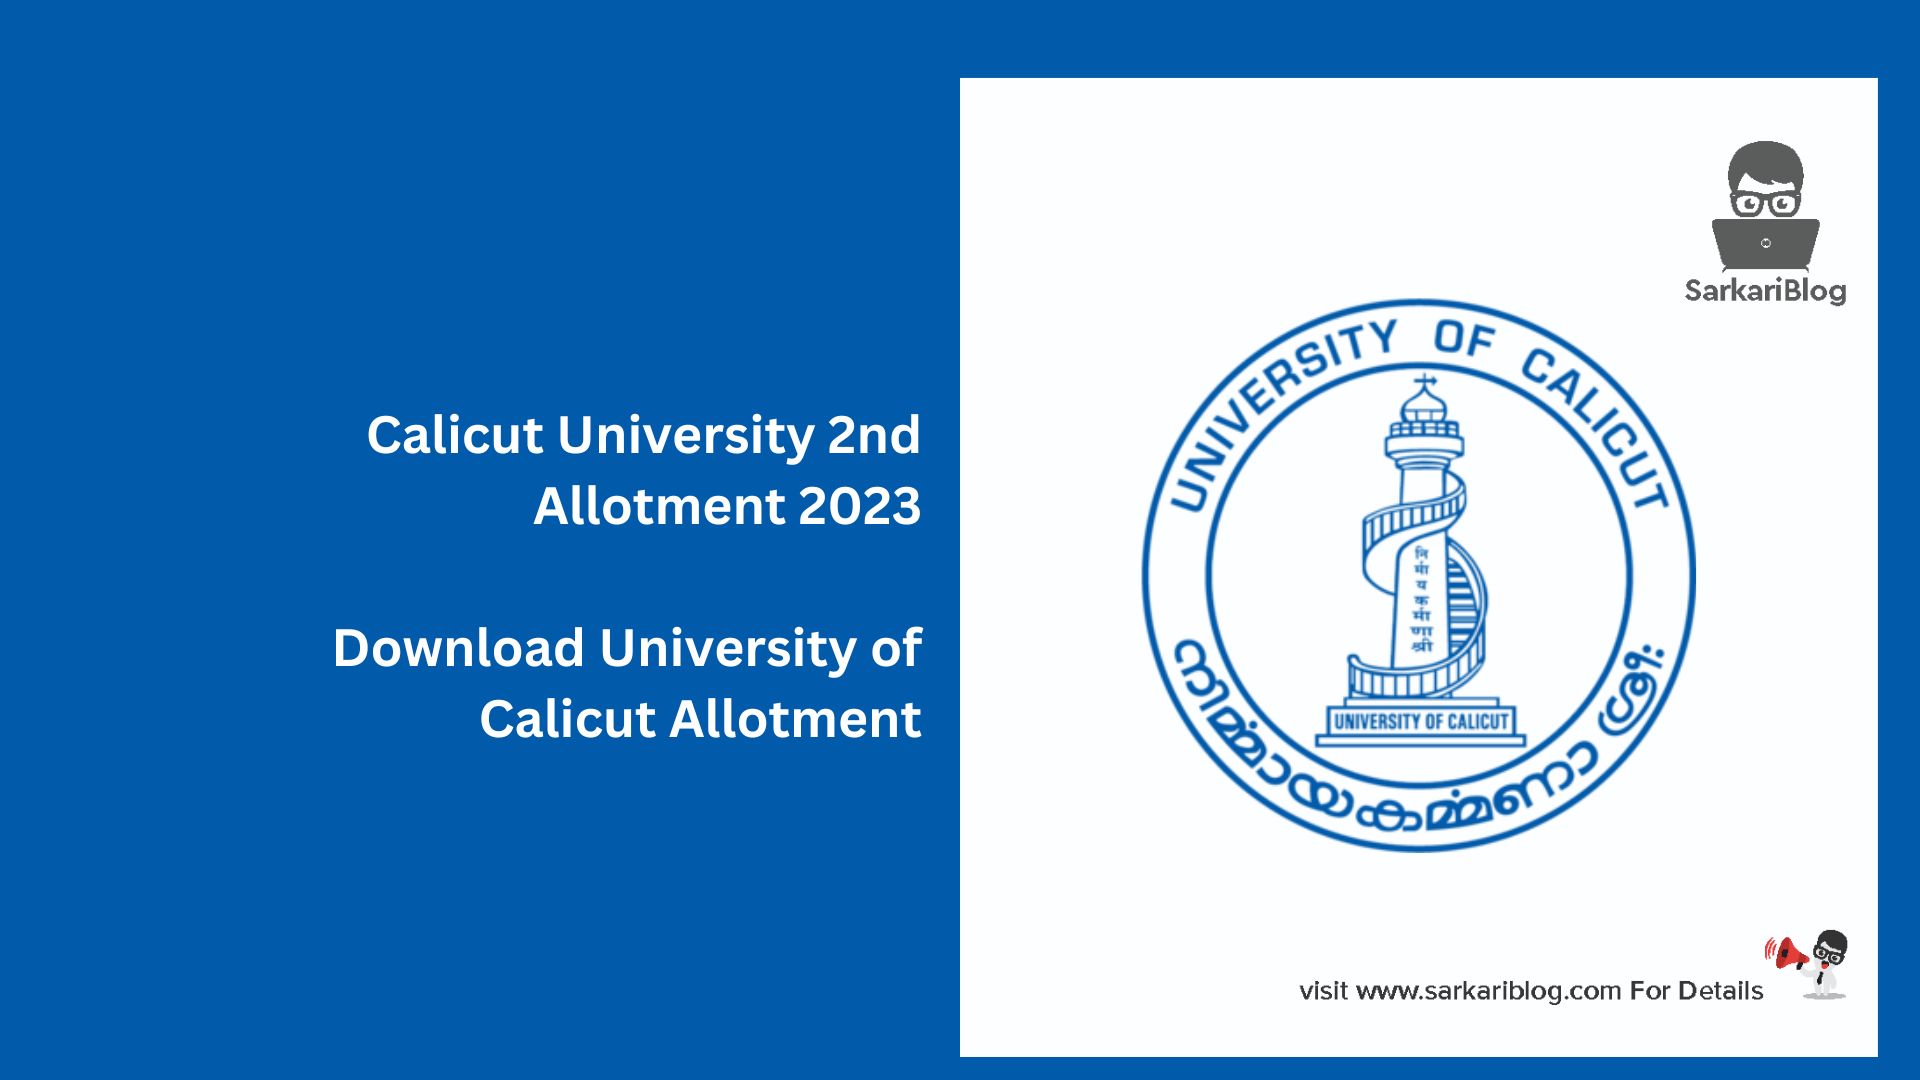 Calicut University 2nd Allotment 2023